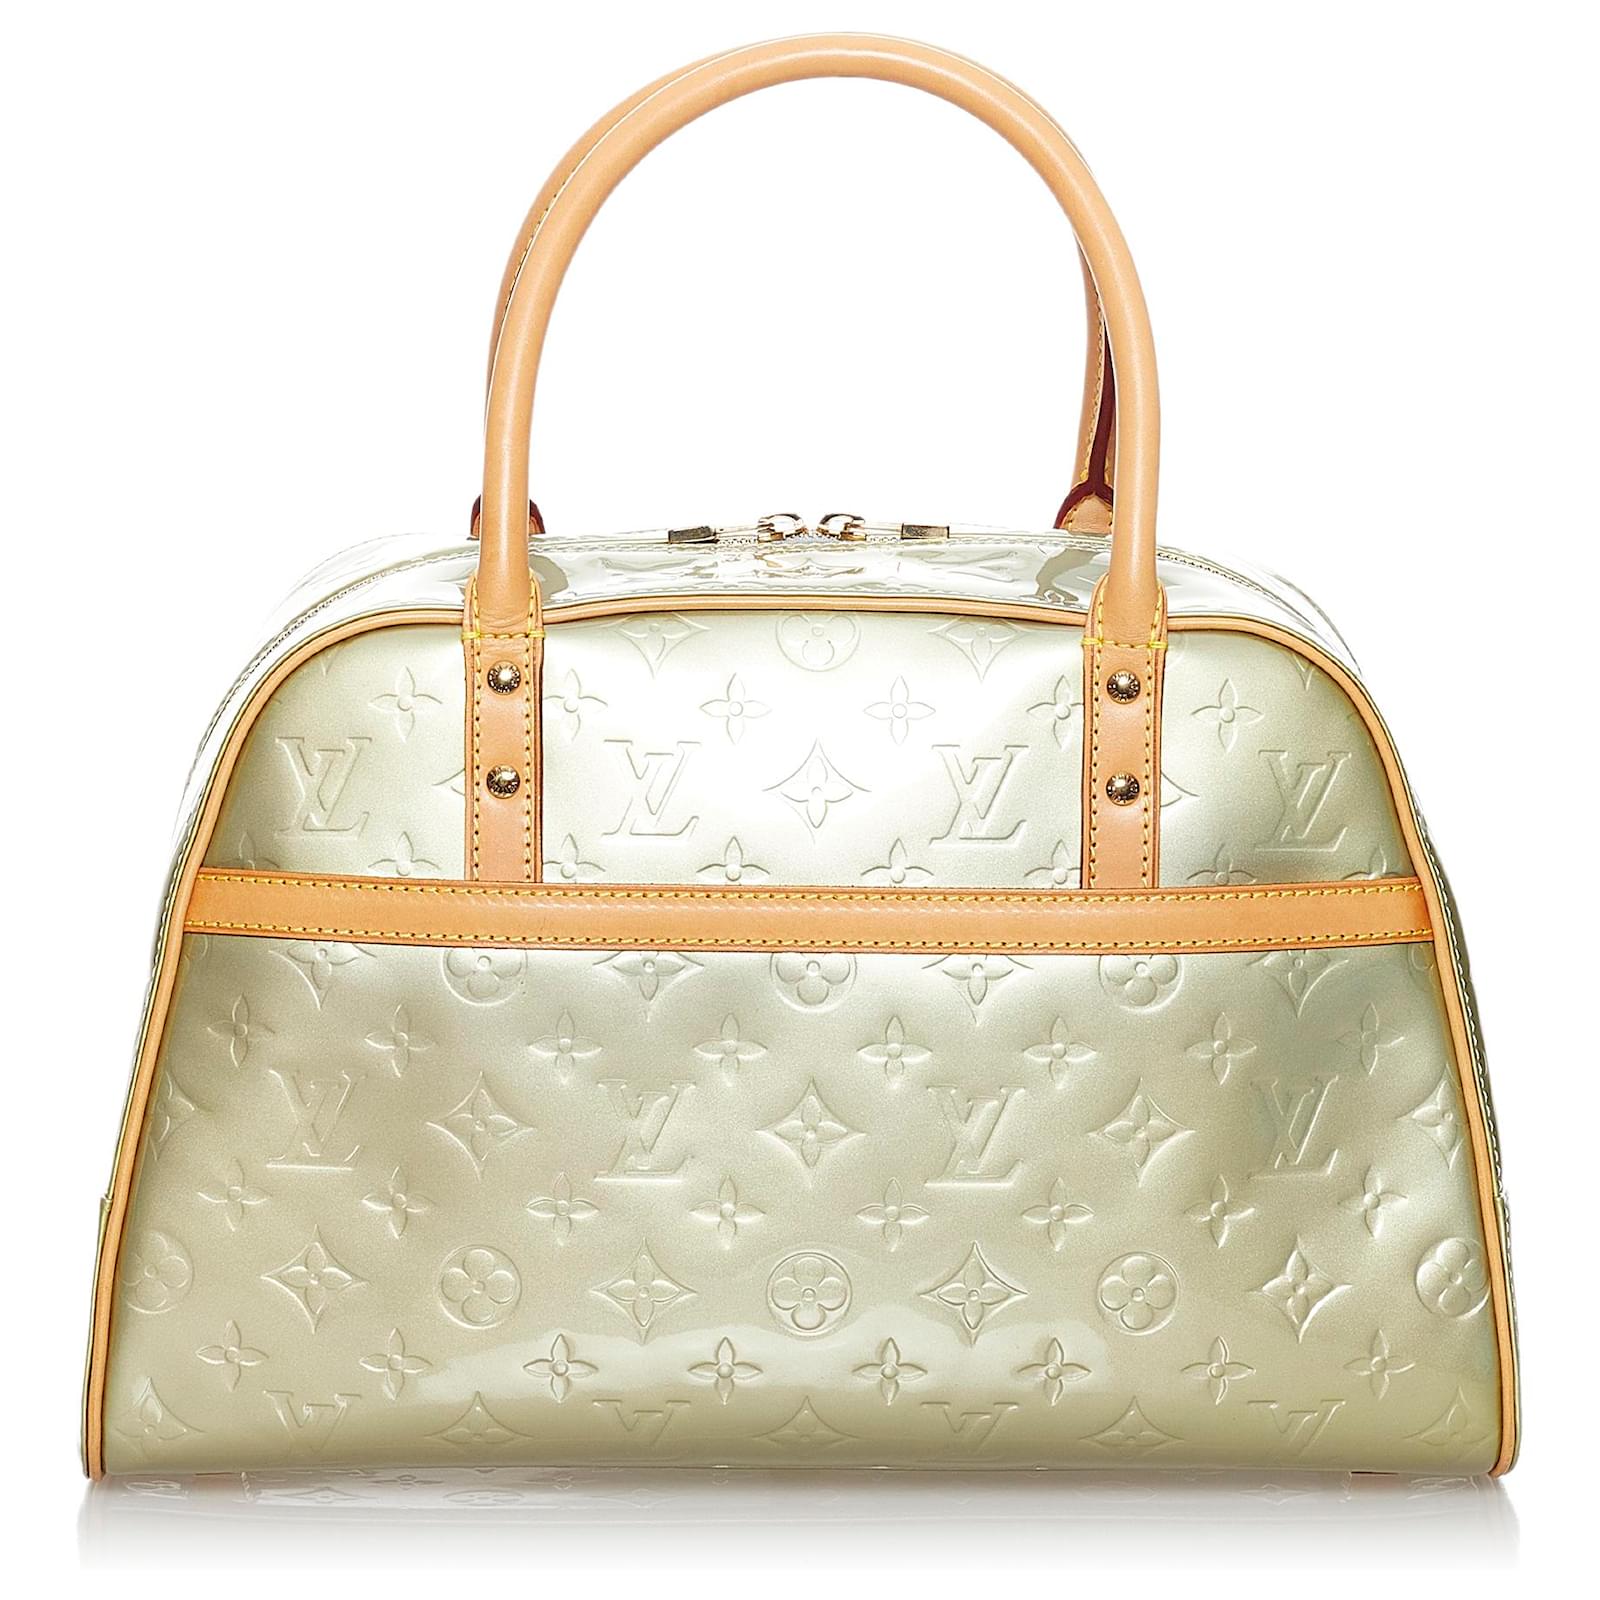 Louis Vuitton Vernis Tompkins Square Bag